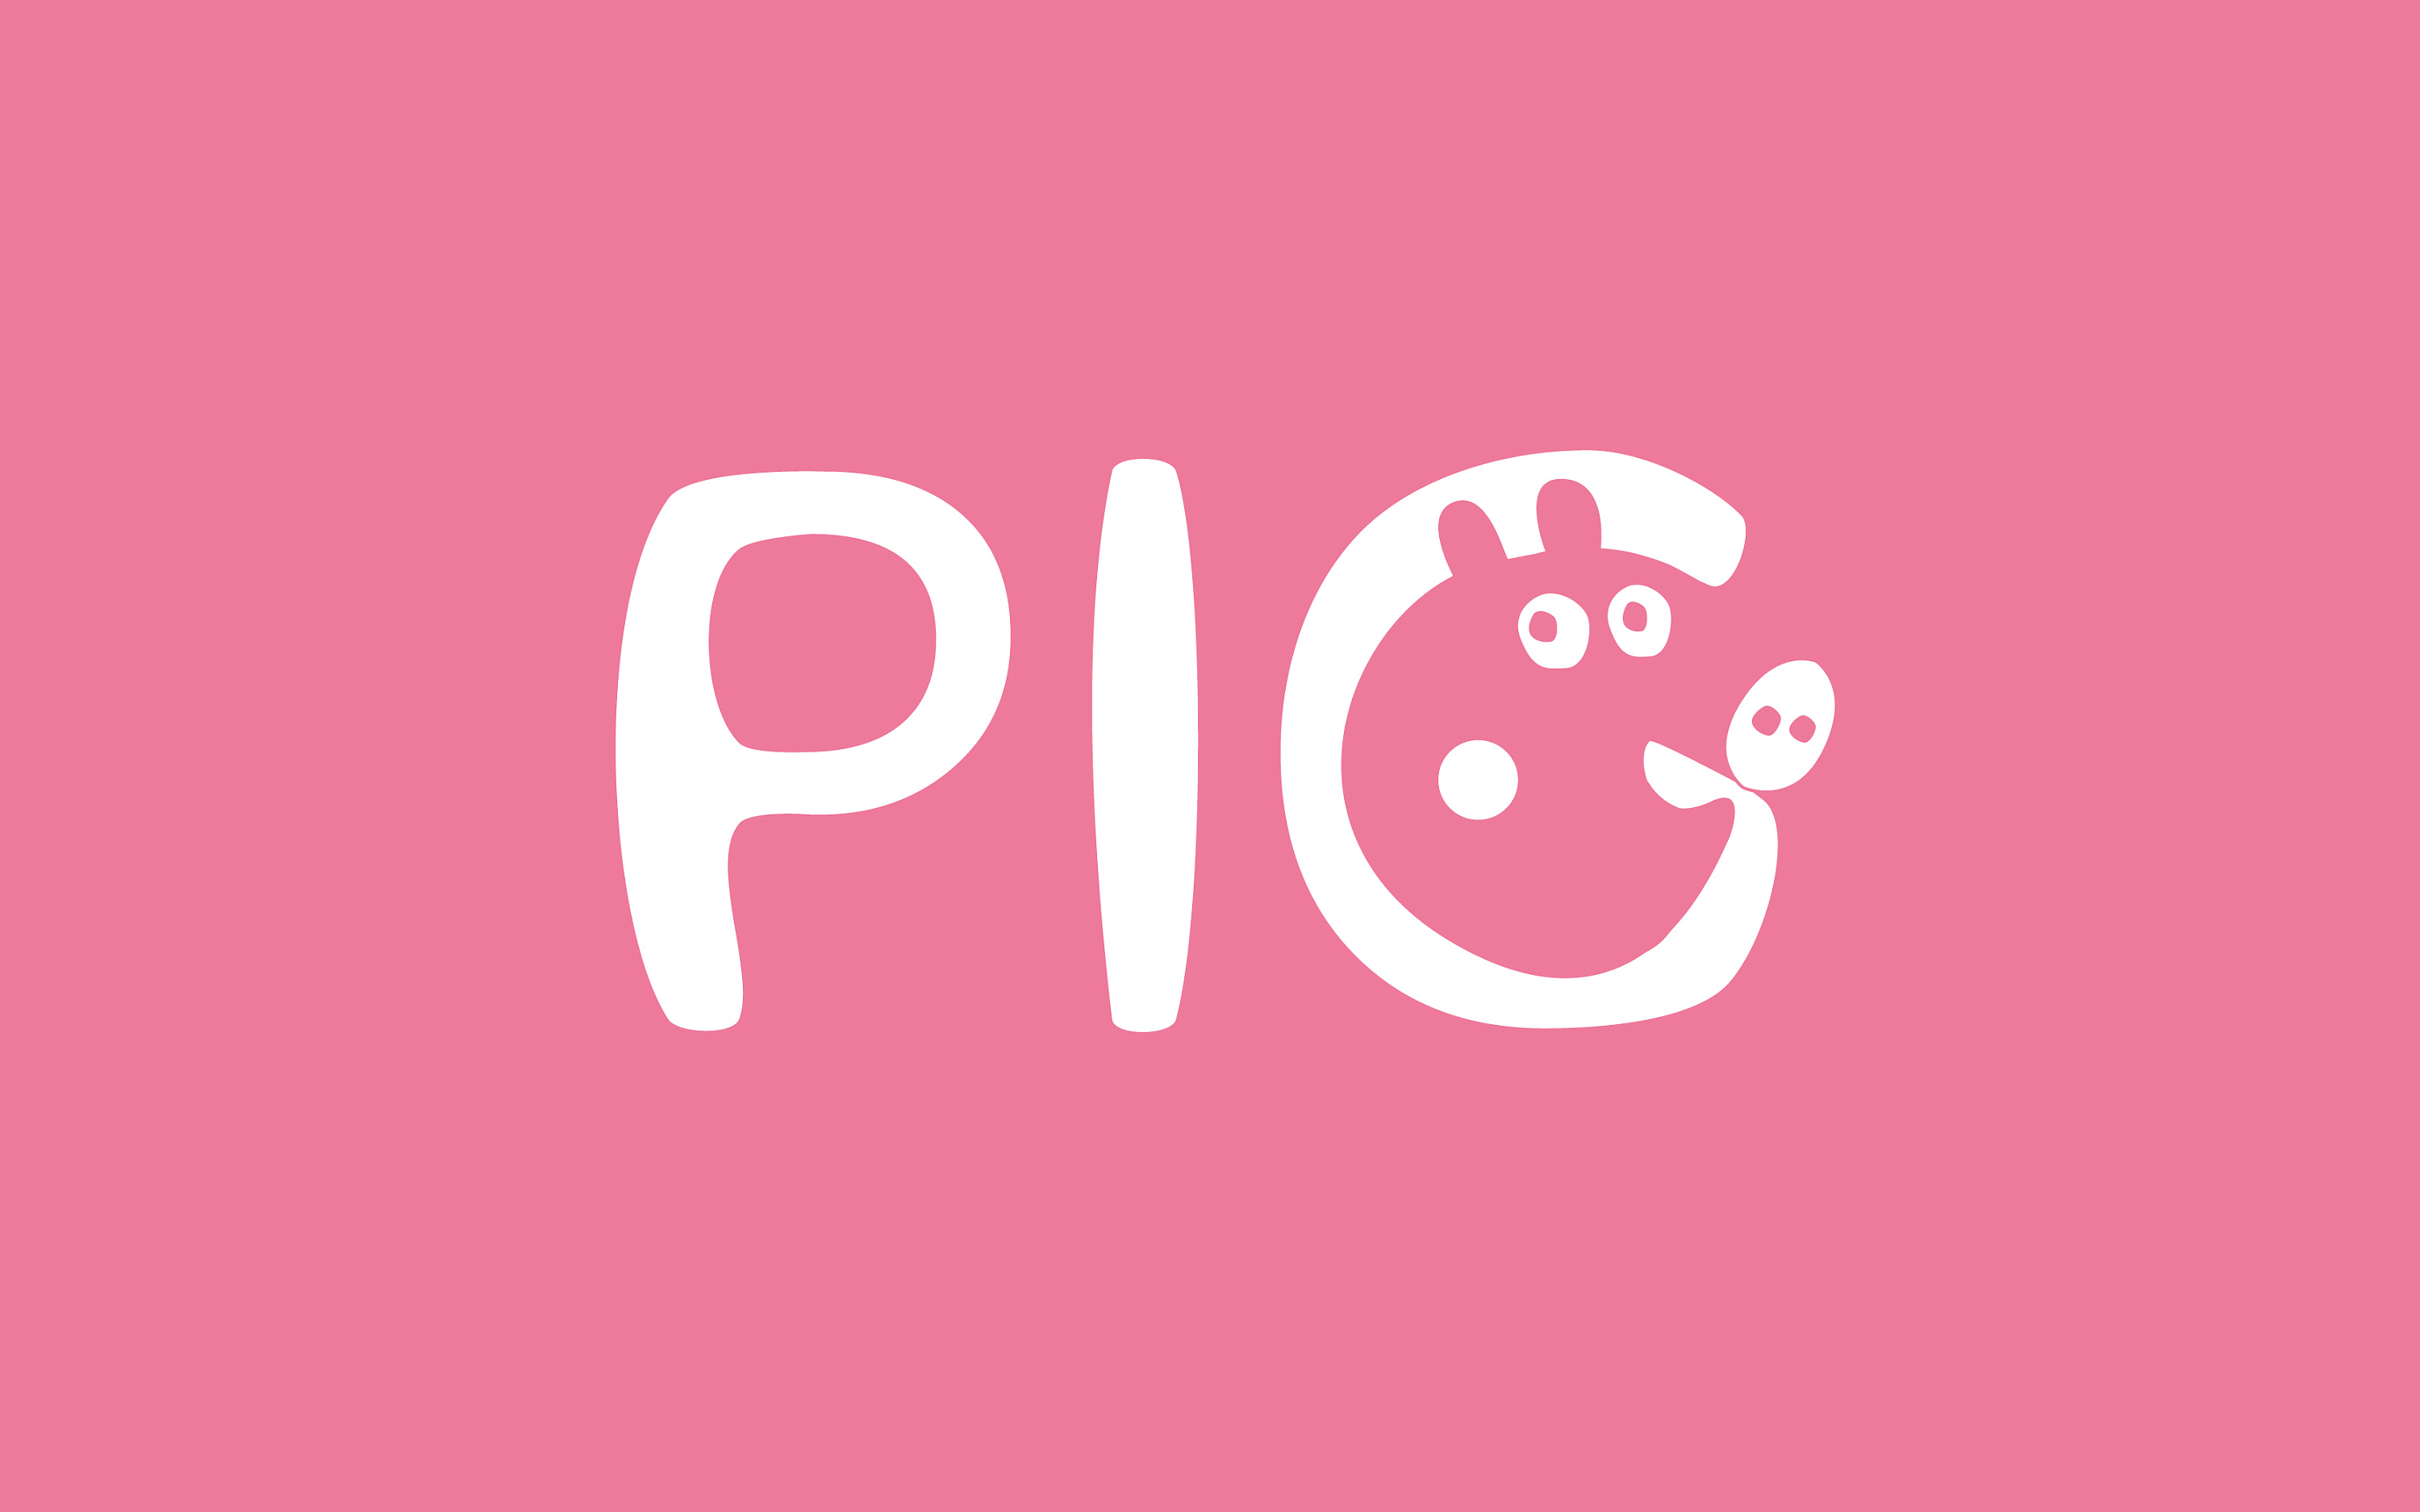 字体设计之PIG小猪佩奇(正负形)